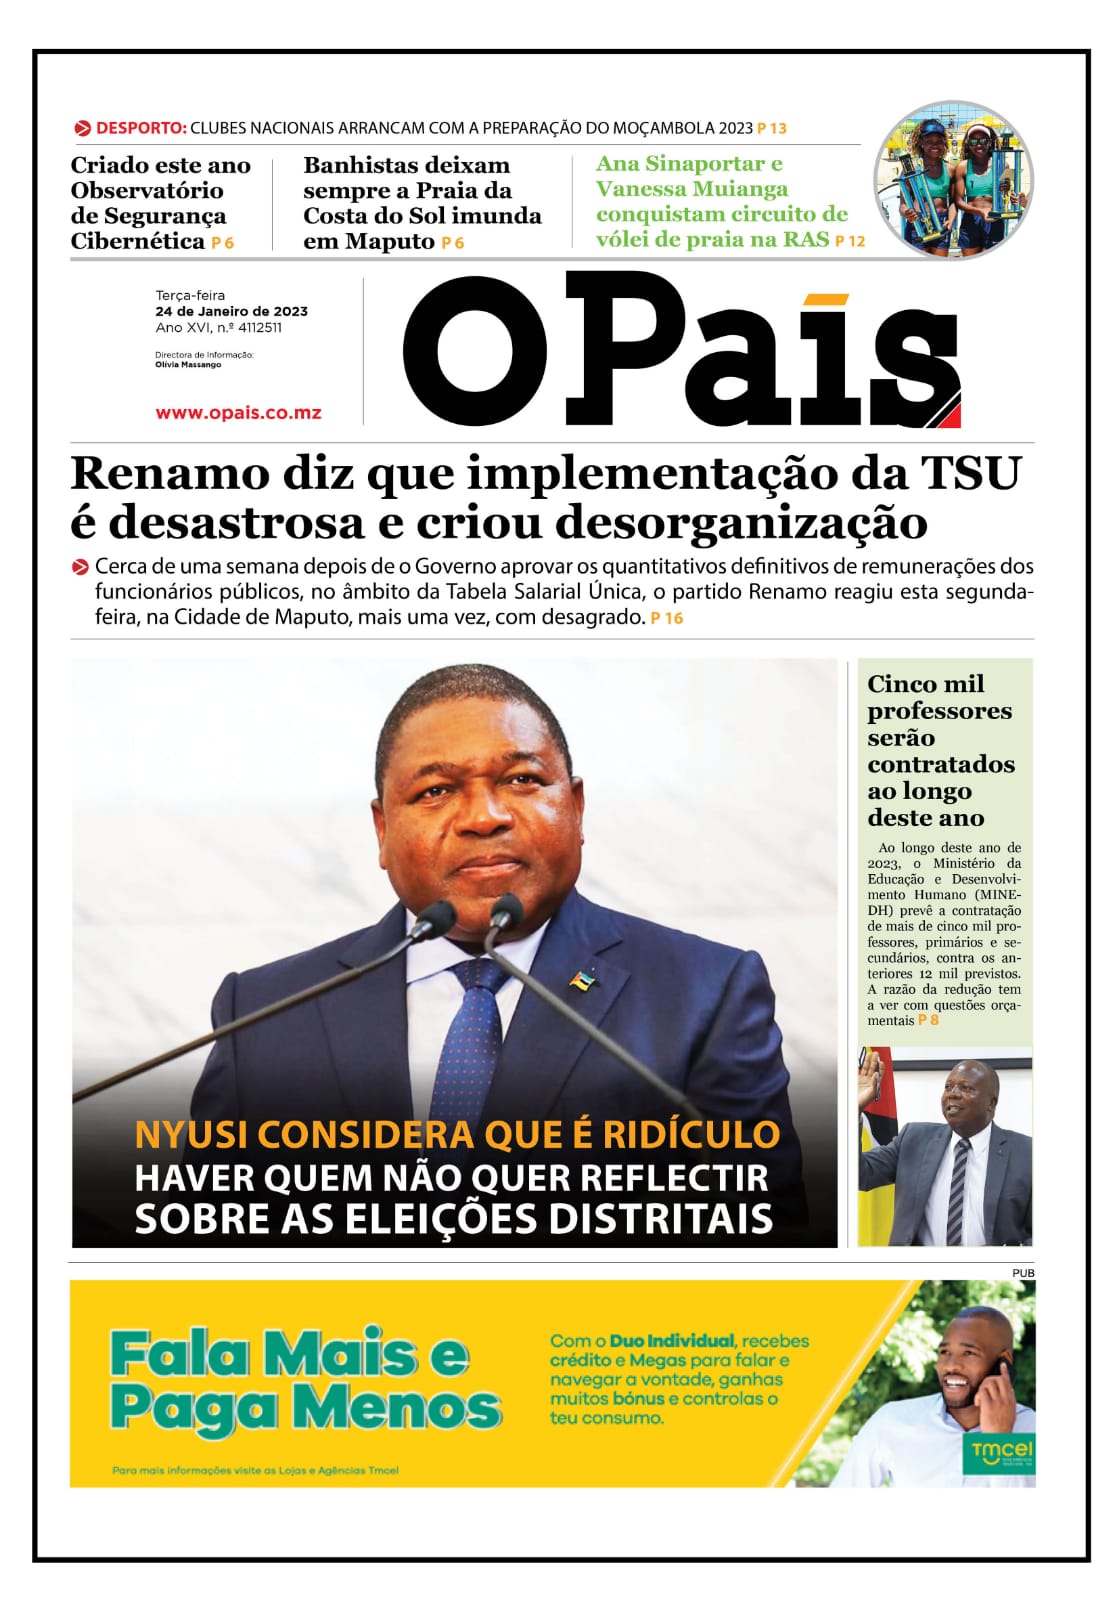 PRF Brasil - Assista reportagem do Jornal da Record sobre